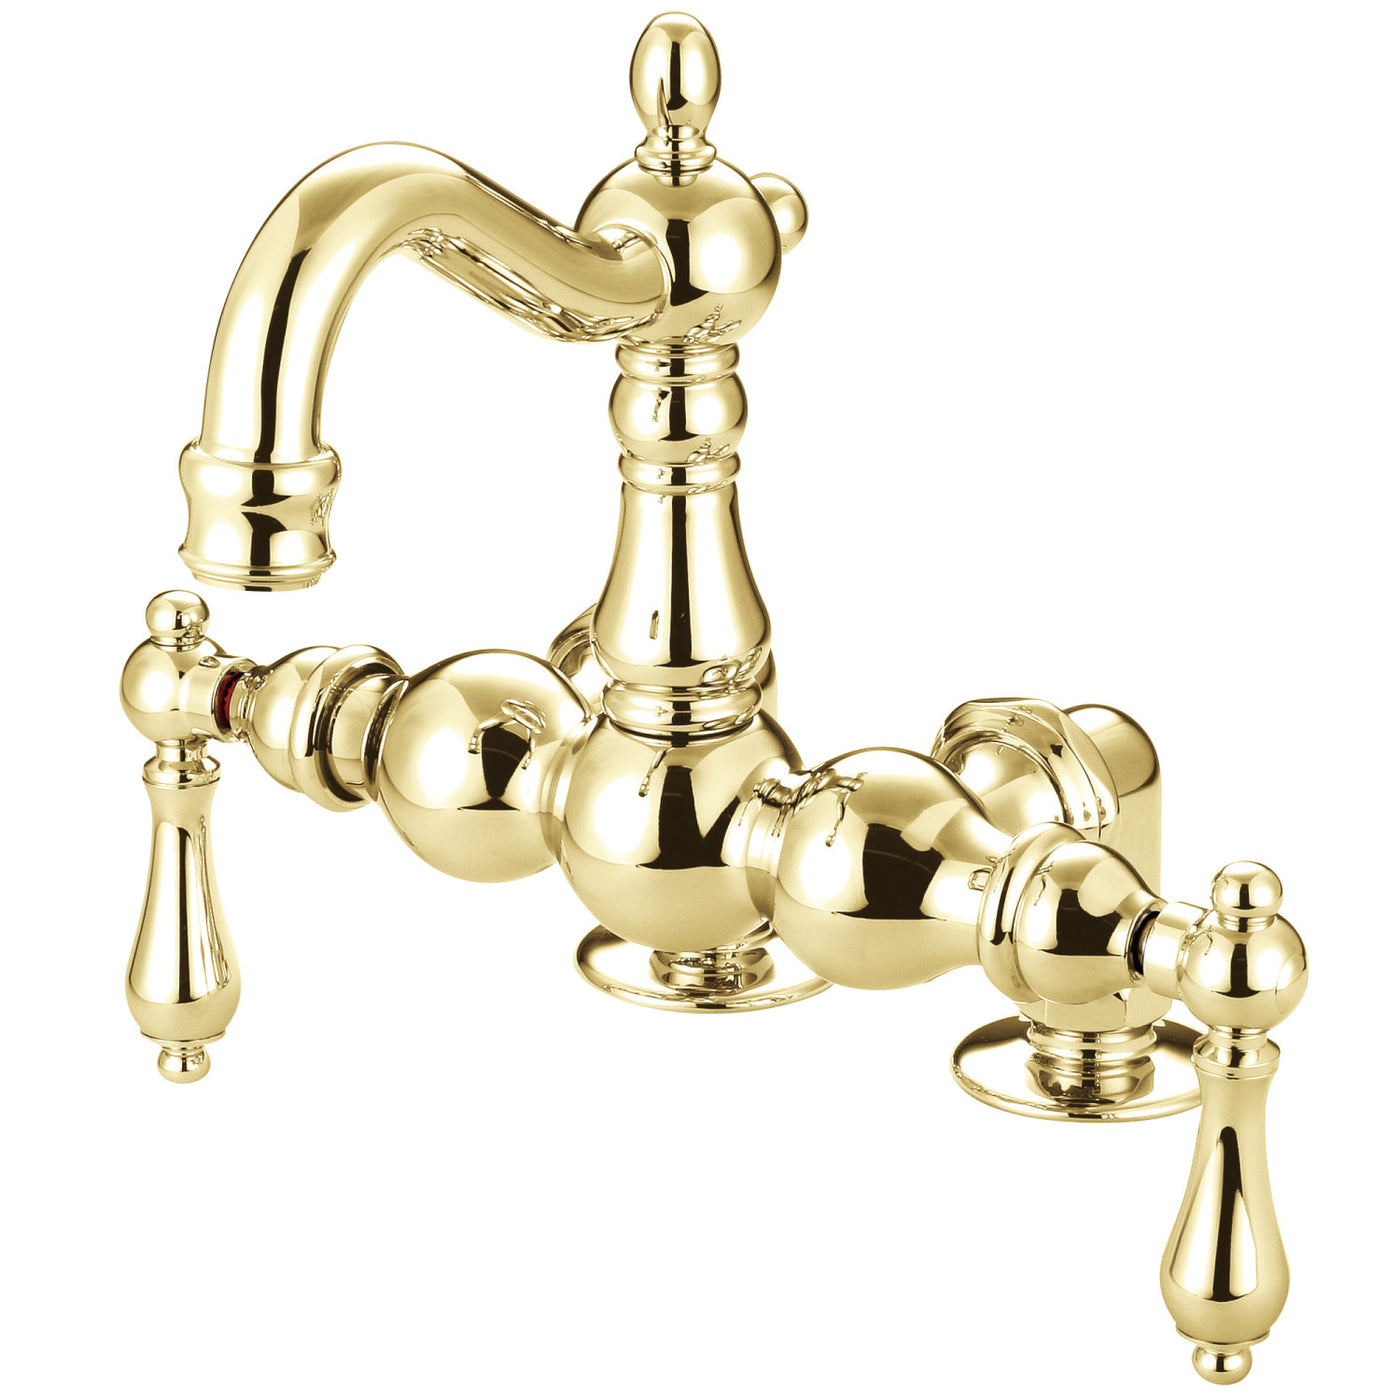 Elements of Design DT10912AL 3-3/8-Inch Deck Mount Tub Faucet, Polished Brass